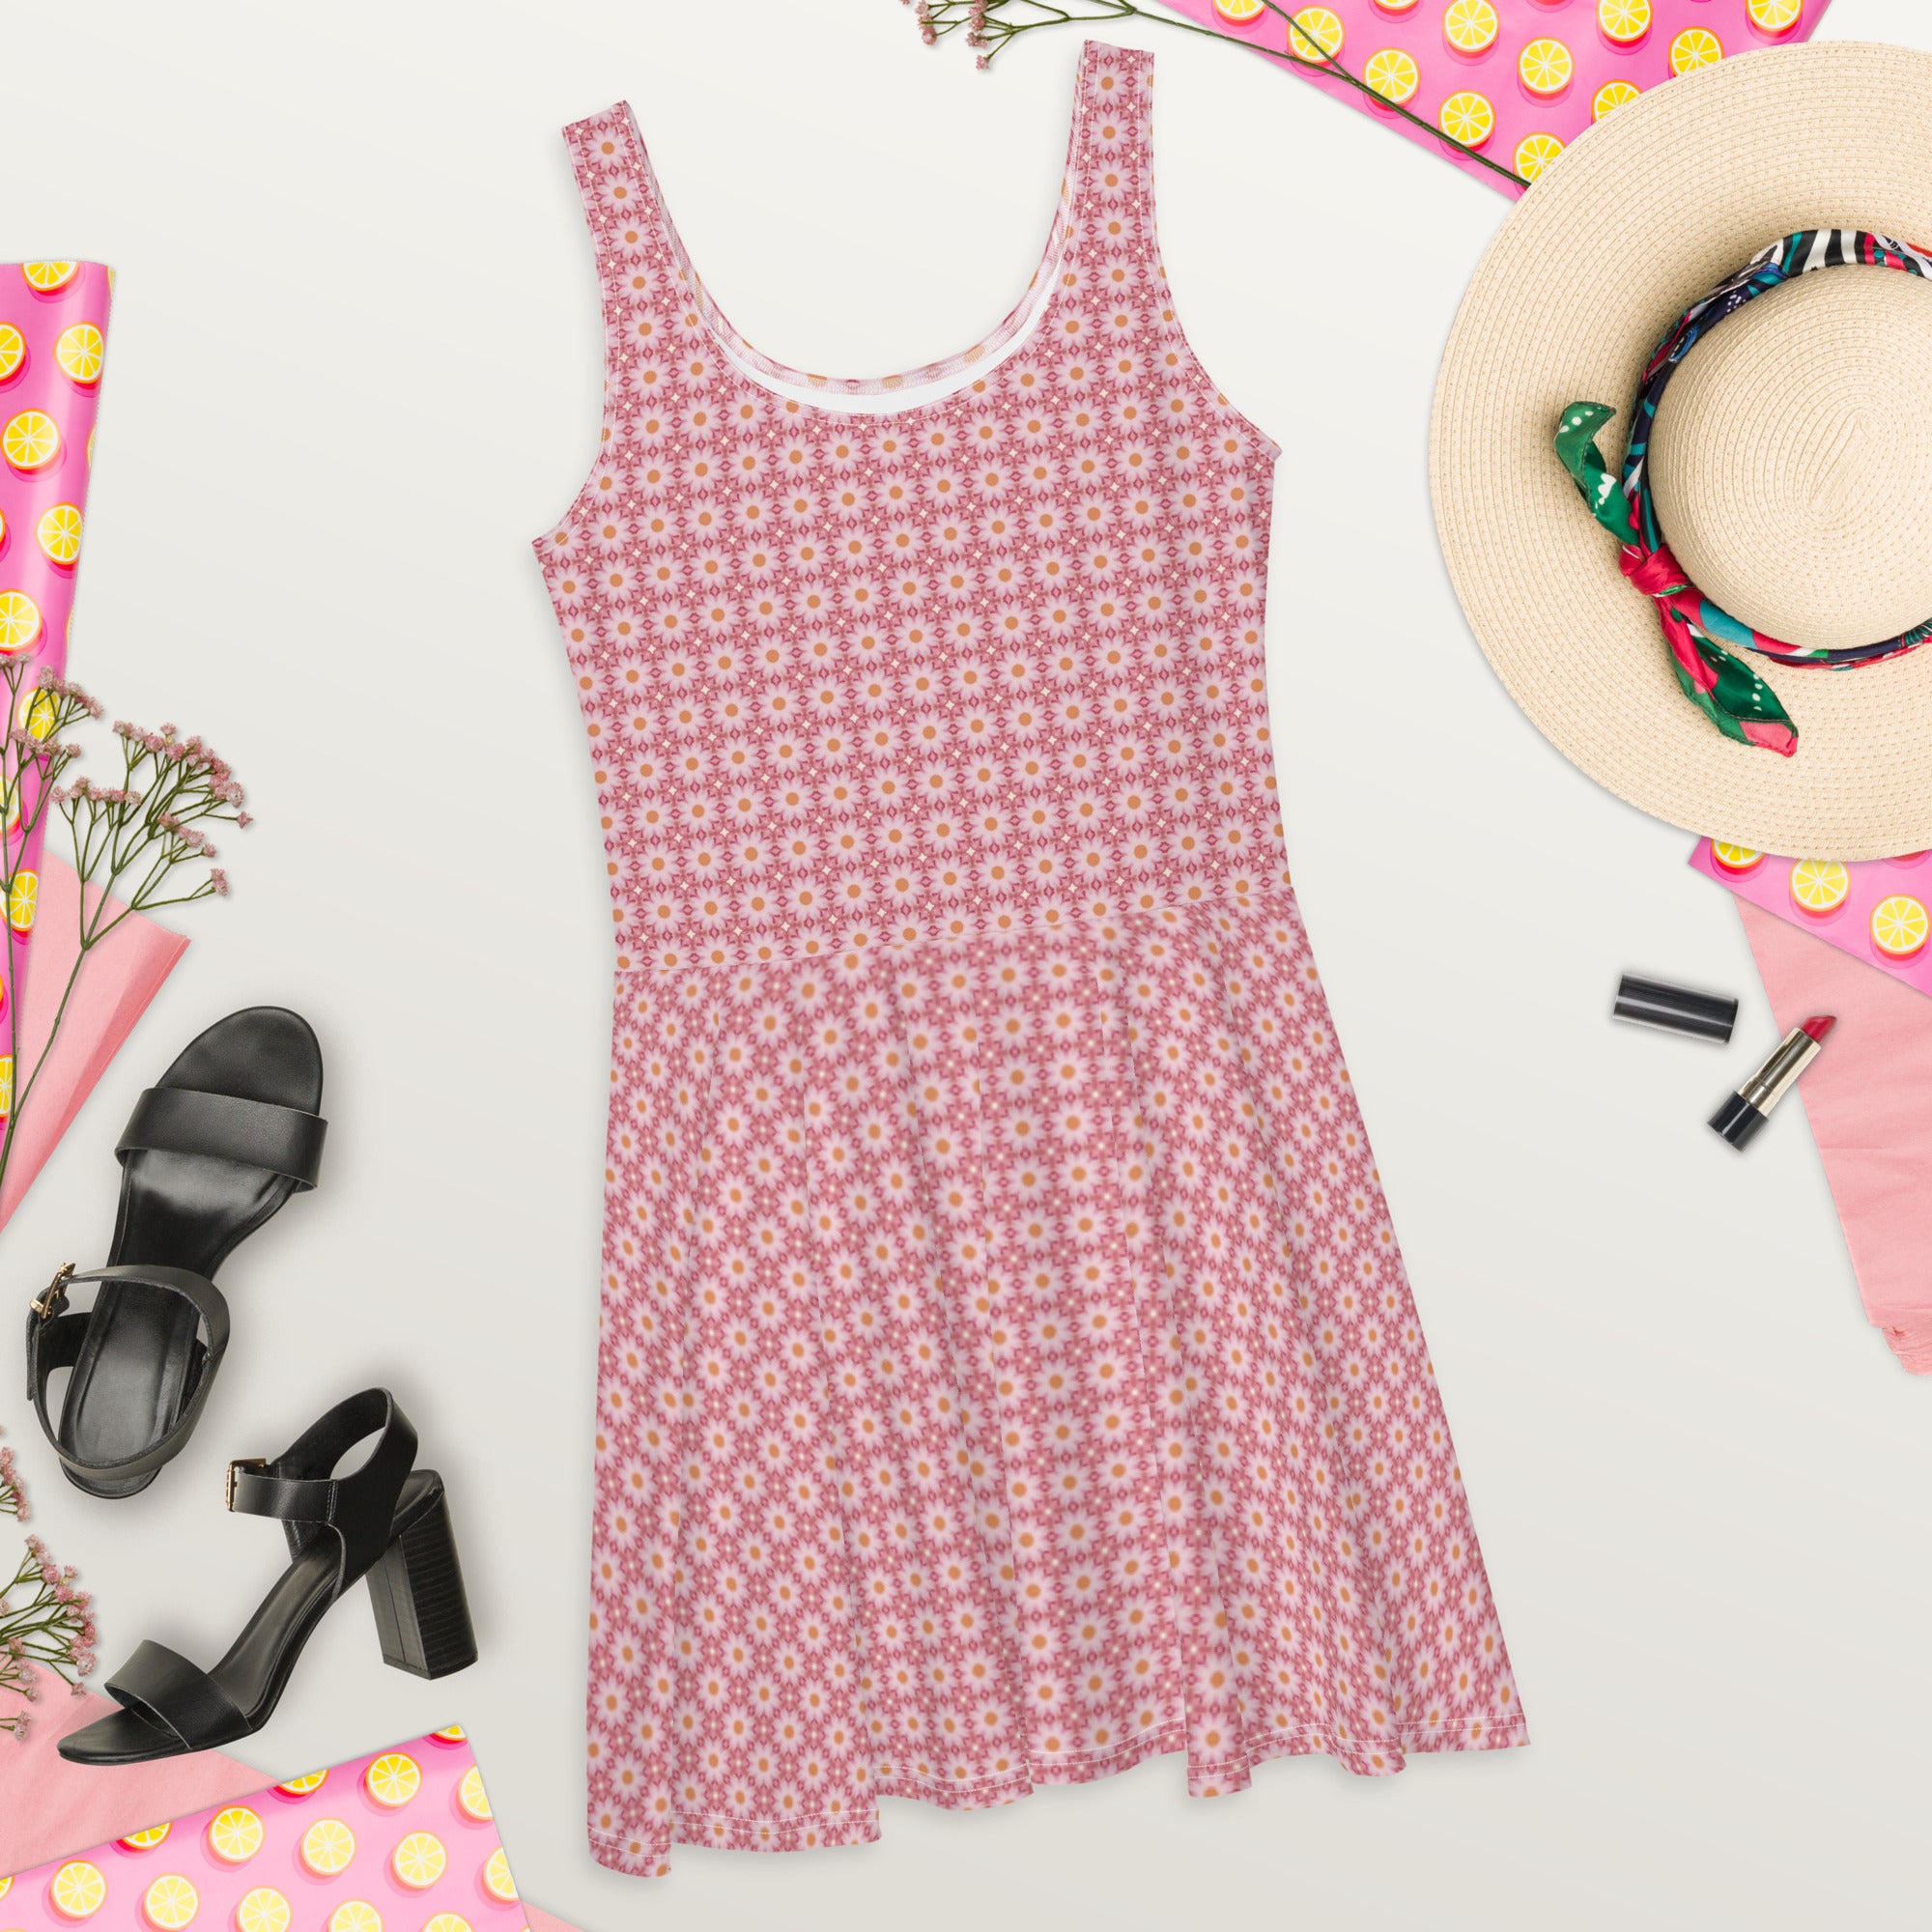 Pink Roses patterned, Skater Dress, by Sensus Studio Design